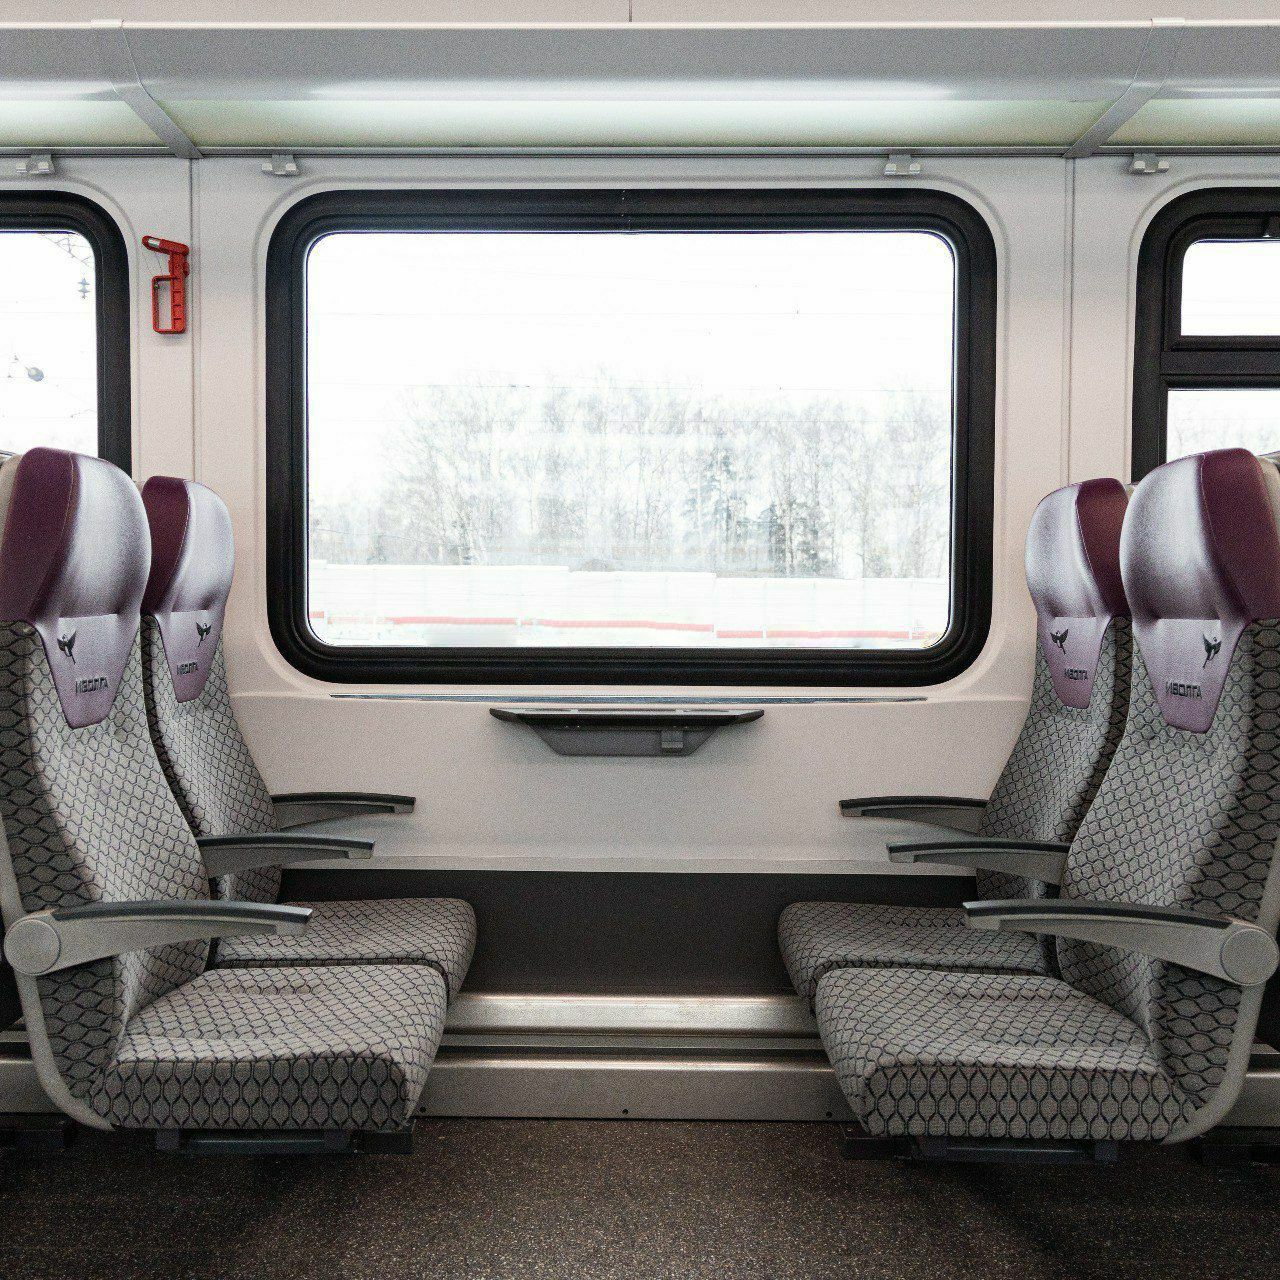 Поезд "Иволга 4.0" проходит обкатку без пассажиров в Подмосковье